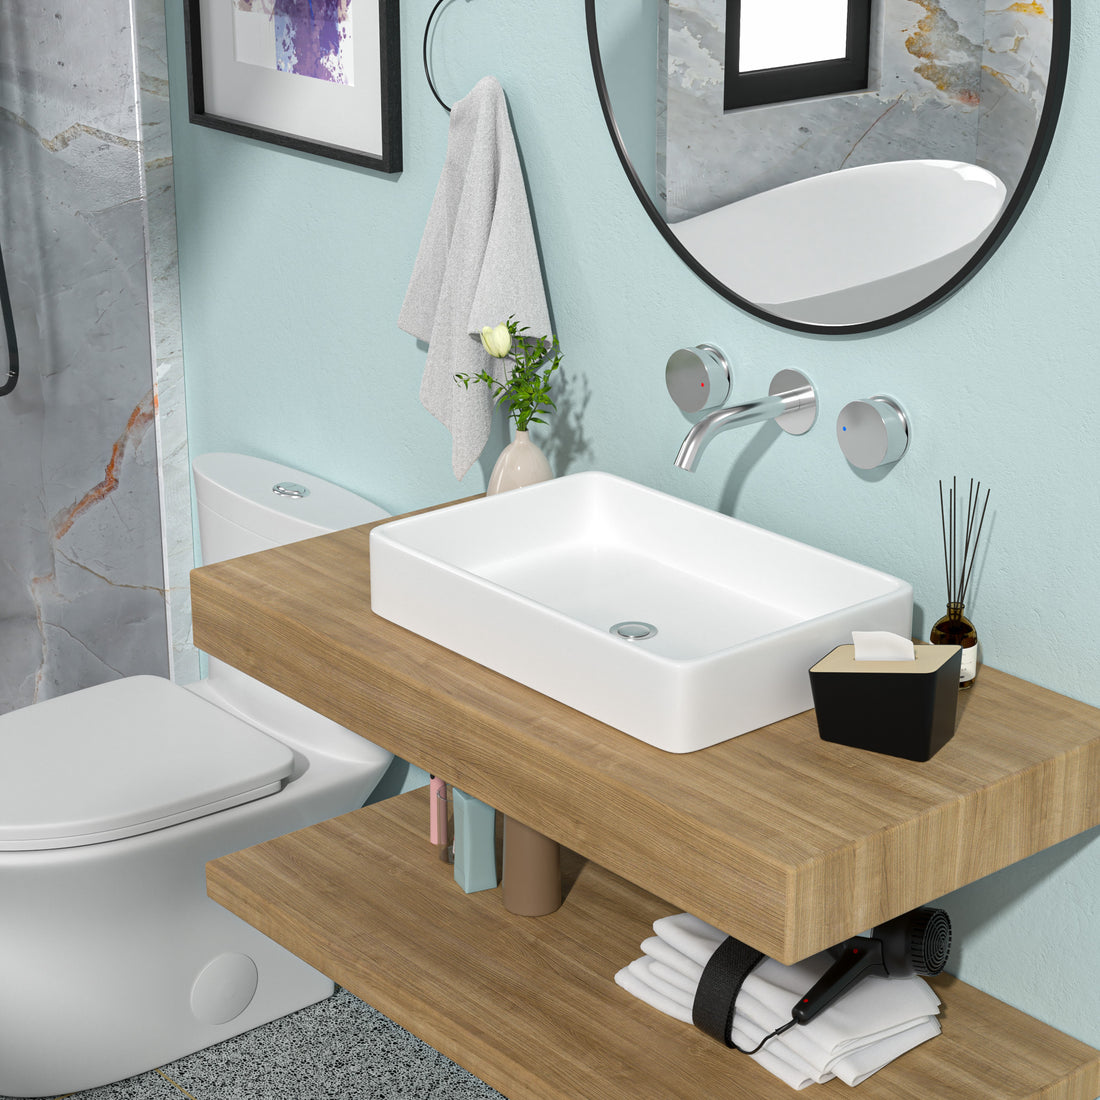 24"x16" White Ceramic Rectangular Vessel Bathroom Sink white-ceramic